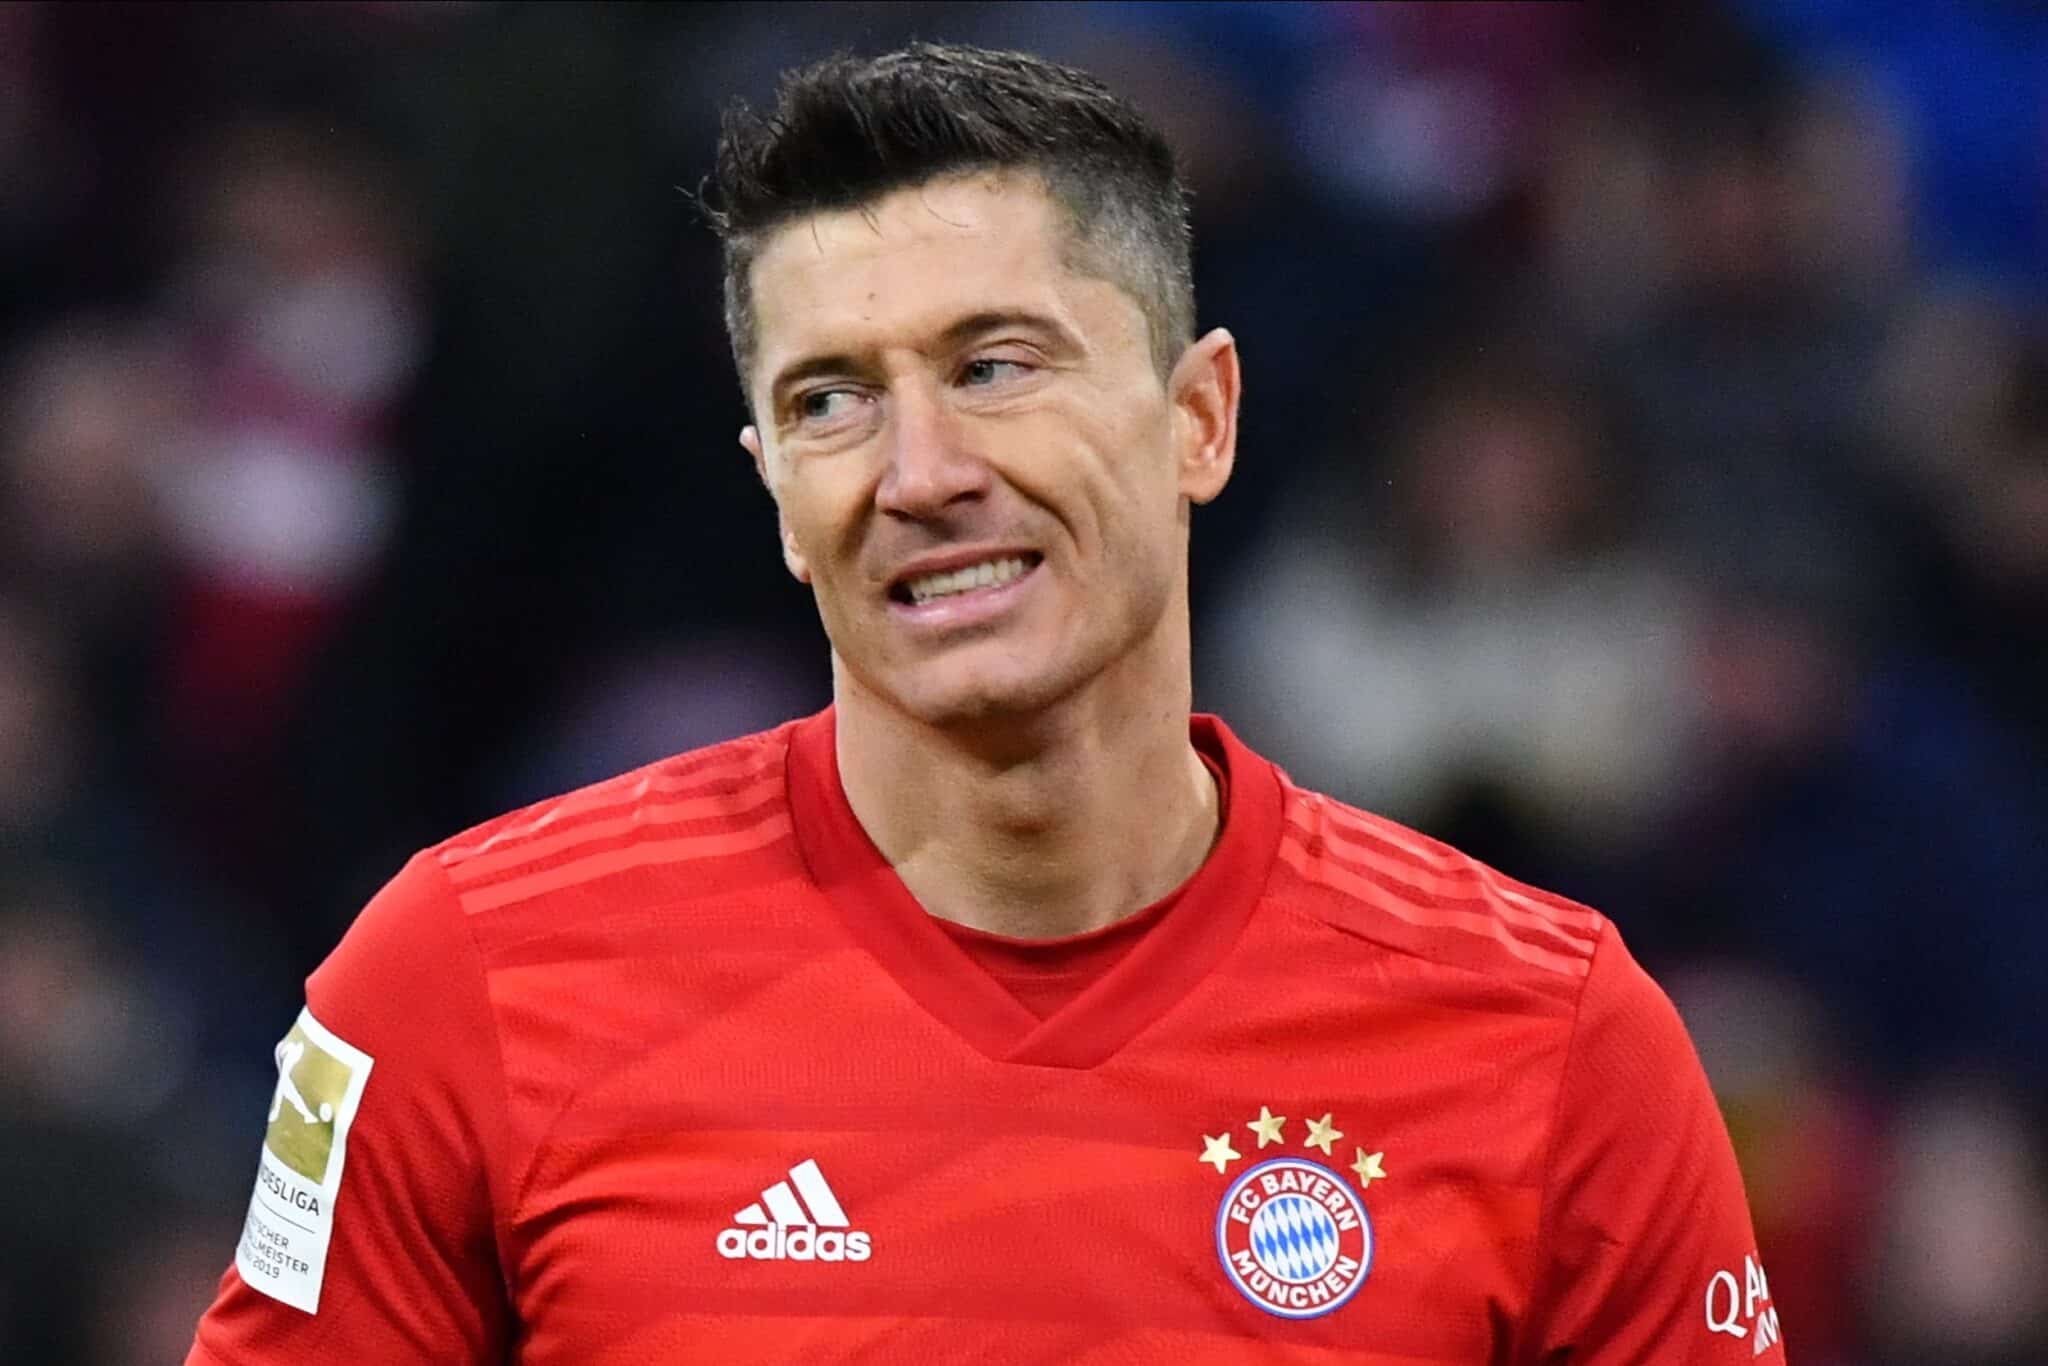 Robert Lewandowski del Bayern reacciona durante el partido de fútbol de la Bundesliga alemana entre el FC Bayern y el VfL Wolfsburg en Munich.